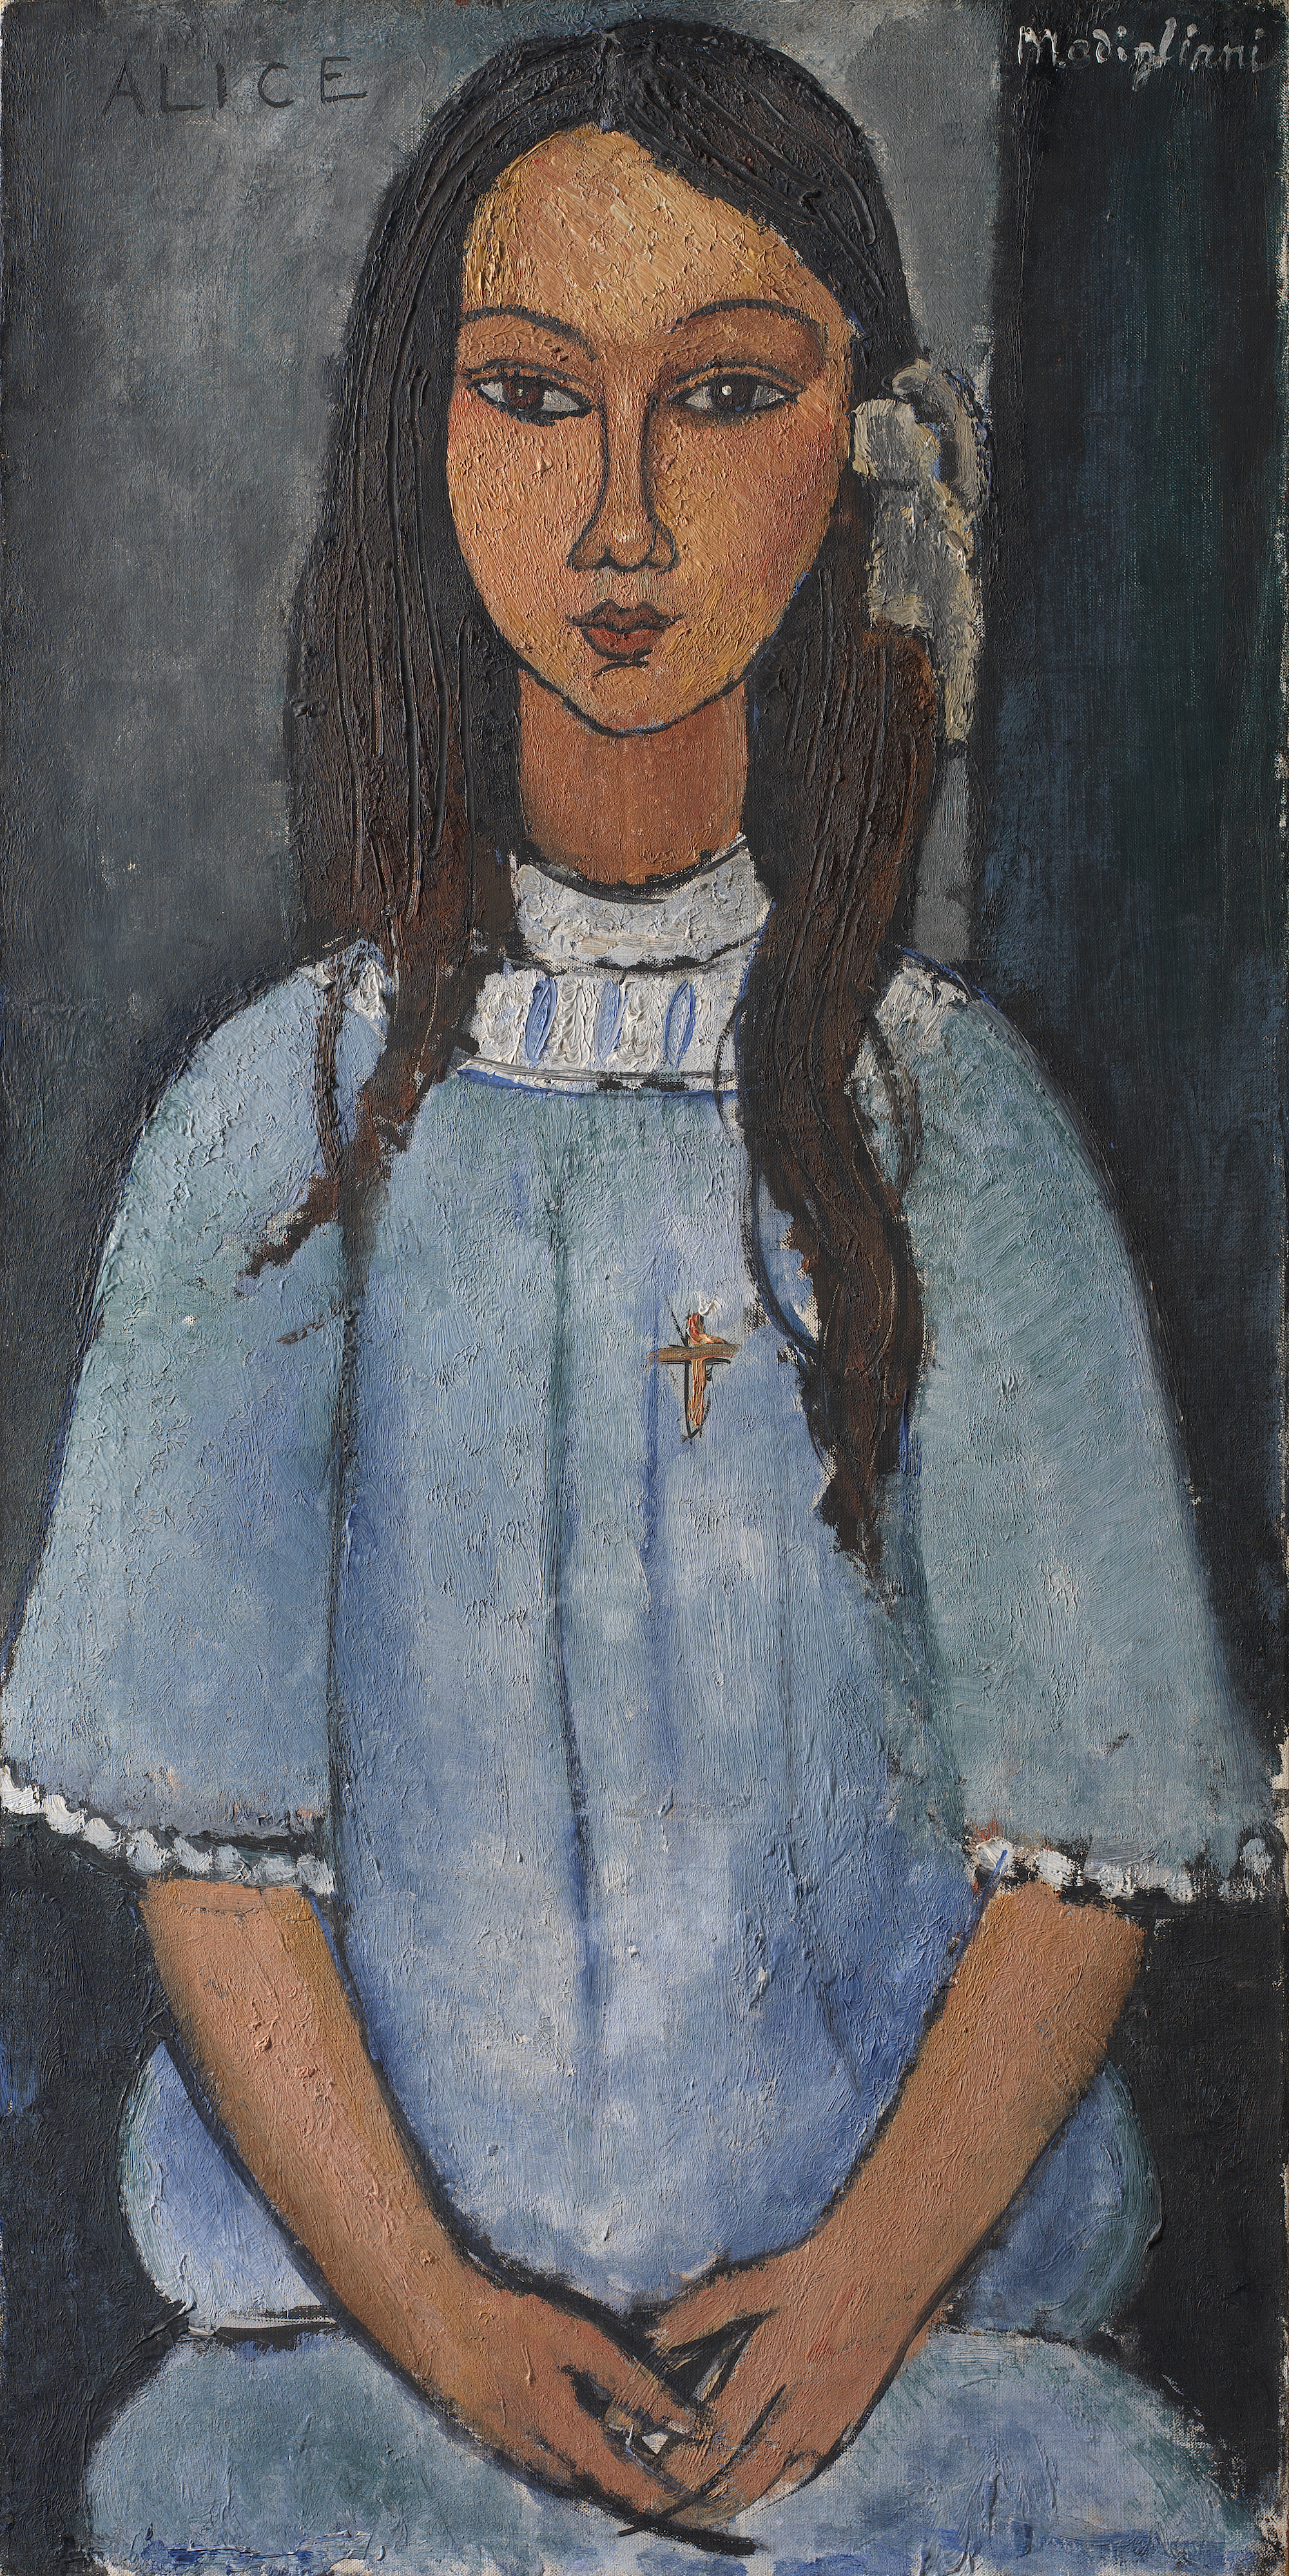 Alice  by Amedeo Modigliani - c. 1918 - - SMK - Staatsmuseum voor Kunst